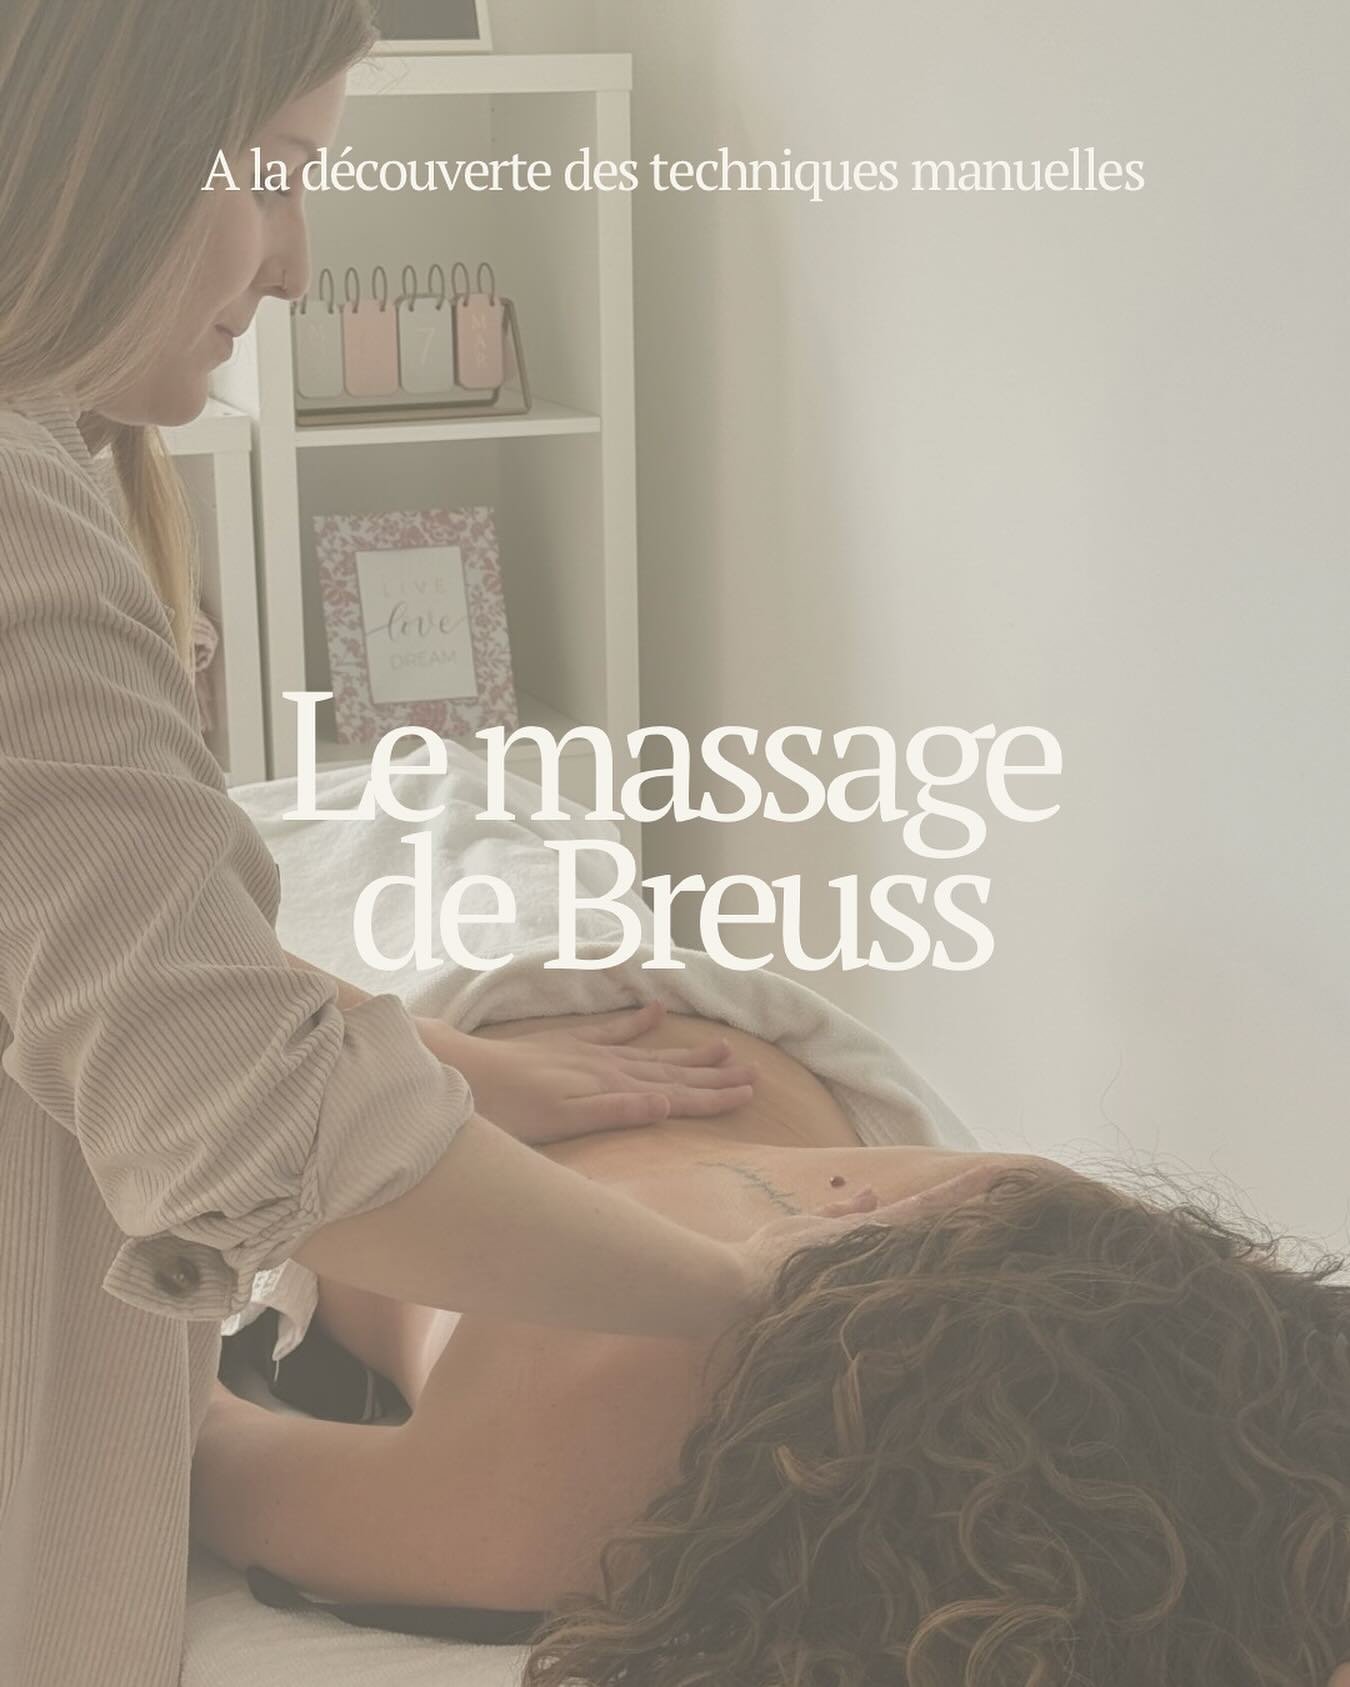 Le massage de Breuss ✨

Il s&rsquo;agit d&rsquo;un massage &agrave; la fois th&eacute;rapeutique et relaxant. Focalis&eacute; sur la colonne vert&eacute;brale, d&eacute;licat et profond &agrave; la fois, il peut r&eacute;soudre des blocages psychique